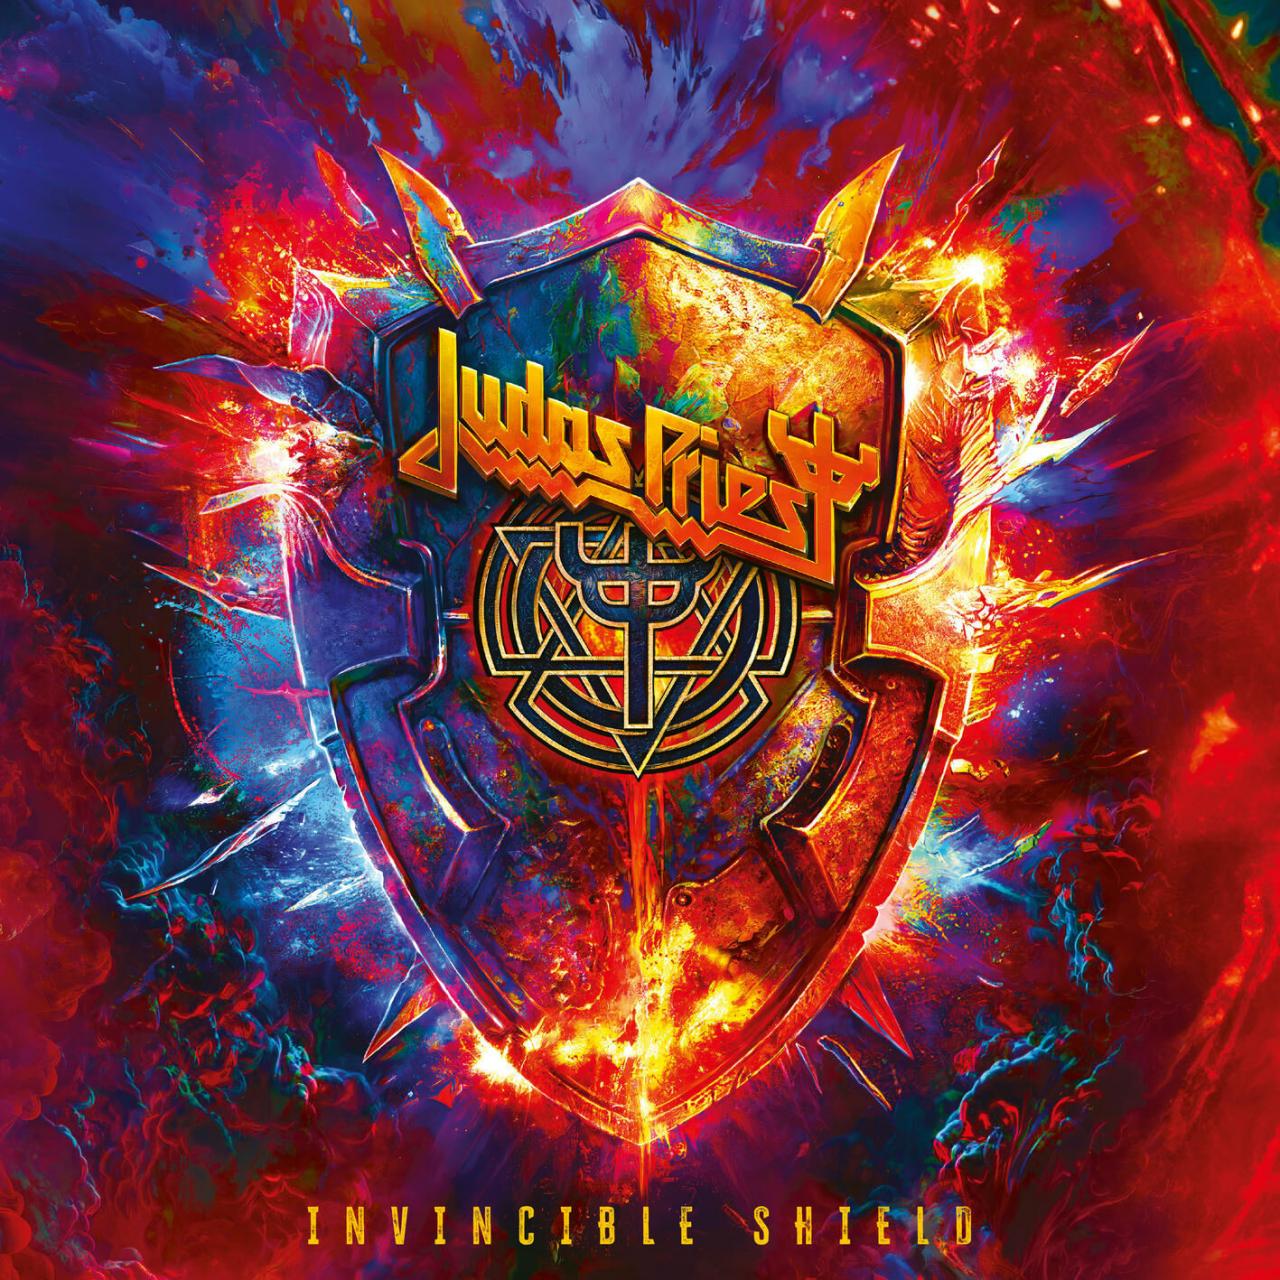 Впечатления от нового альбома Judas Priest Invincible Shield